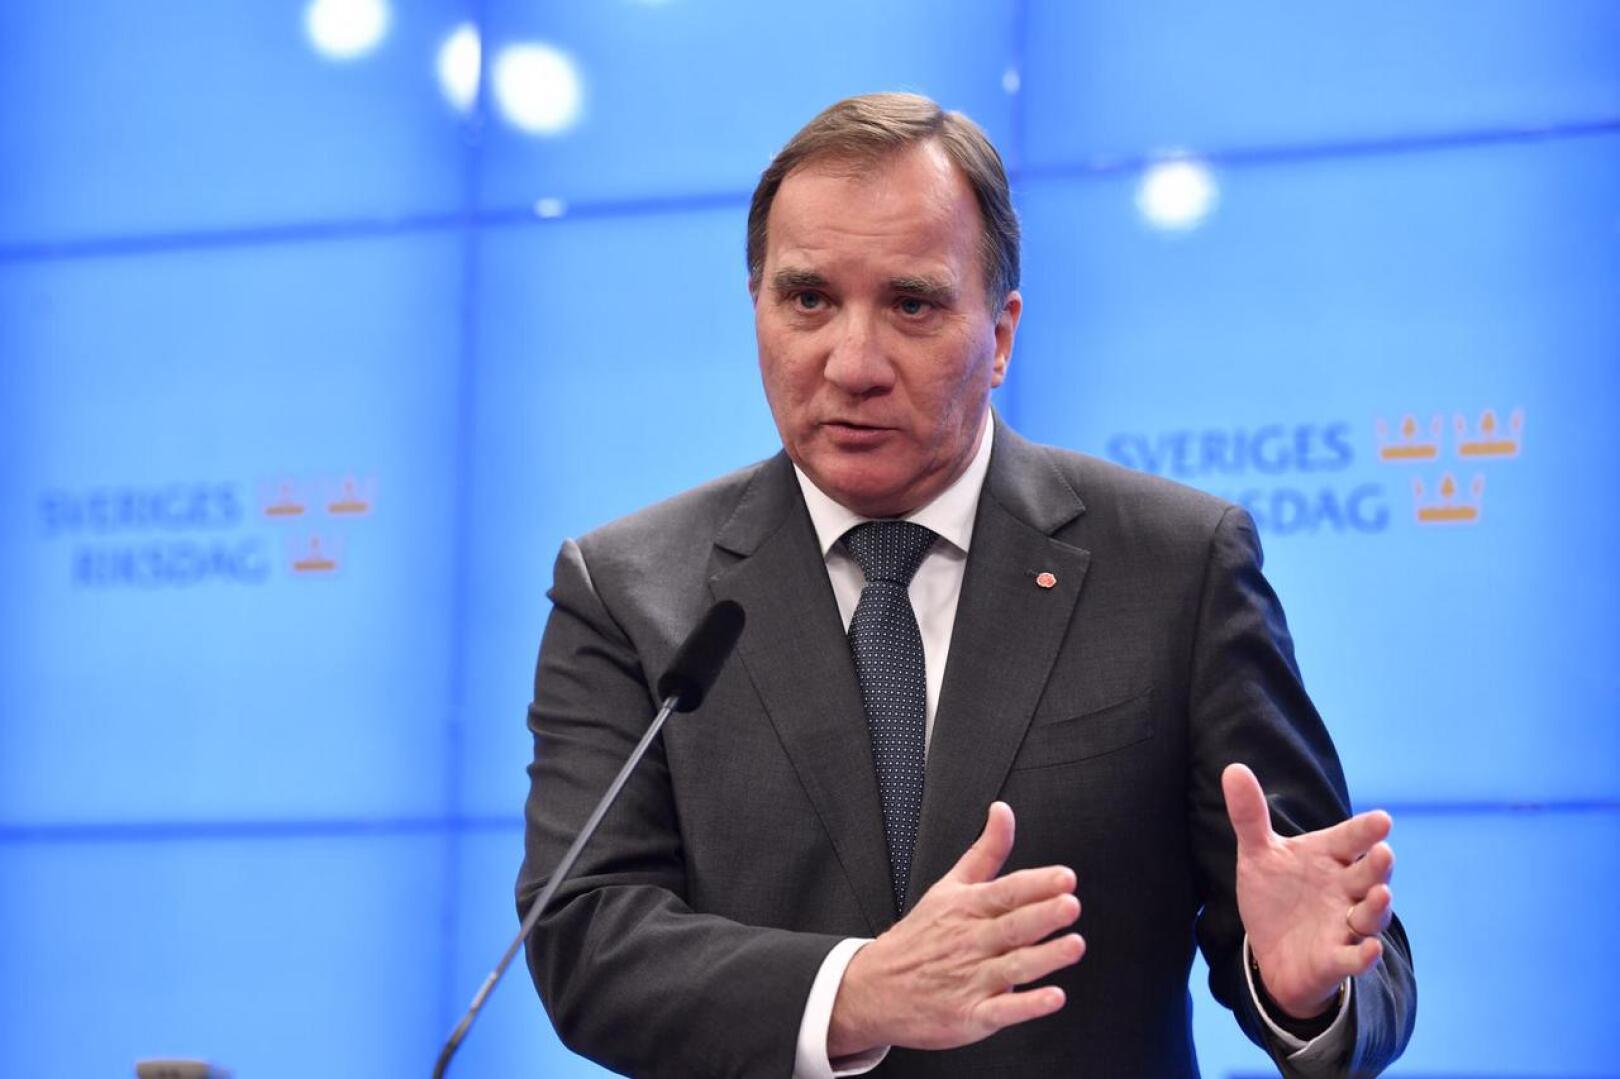 Demarijohtaja Stefan Löfvenin valinta uudeksi pääministeriksi kaatunee perjantaina Ruotsin valtiopäivillä.